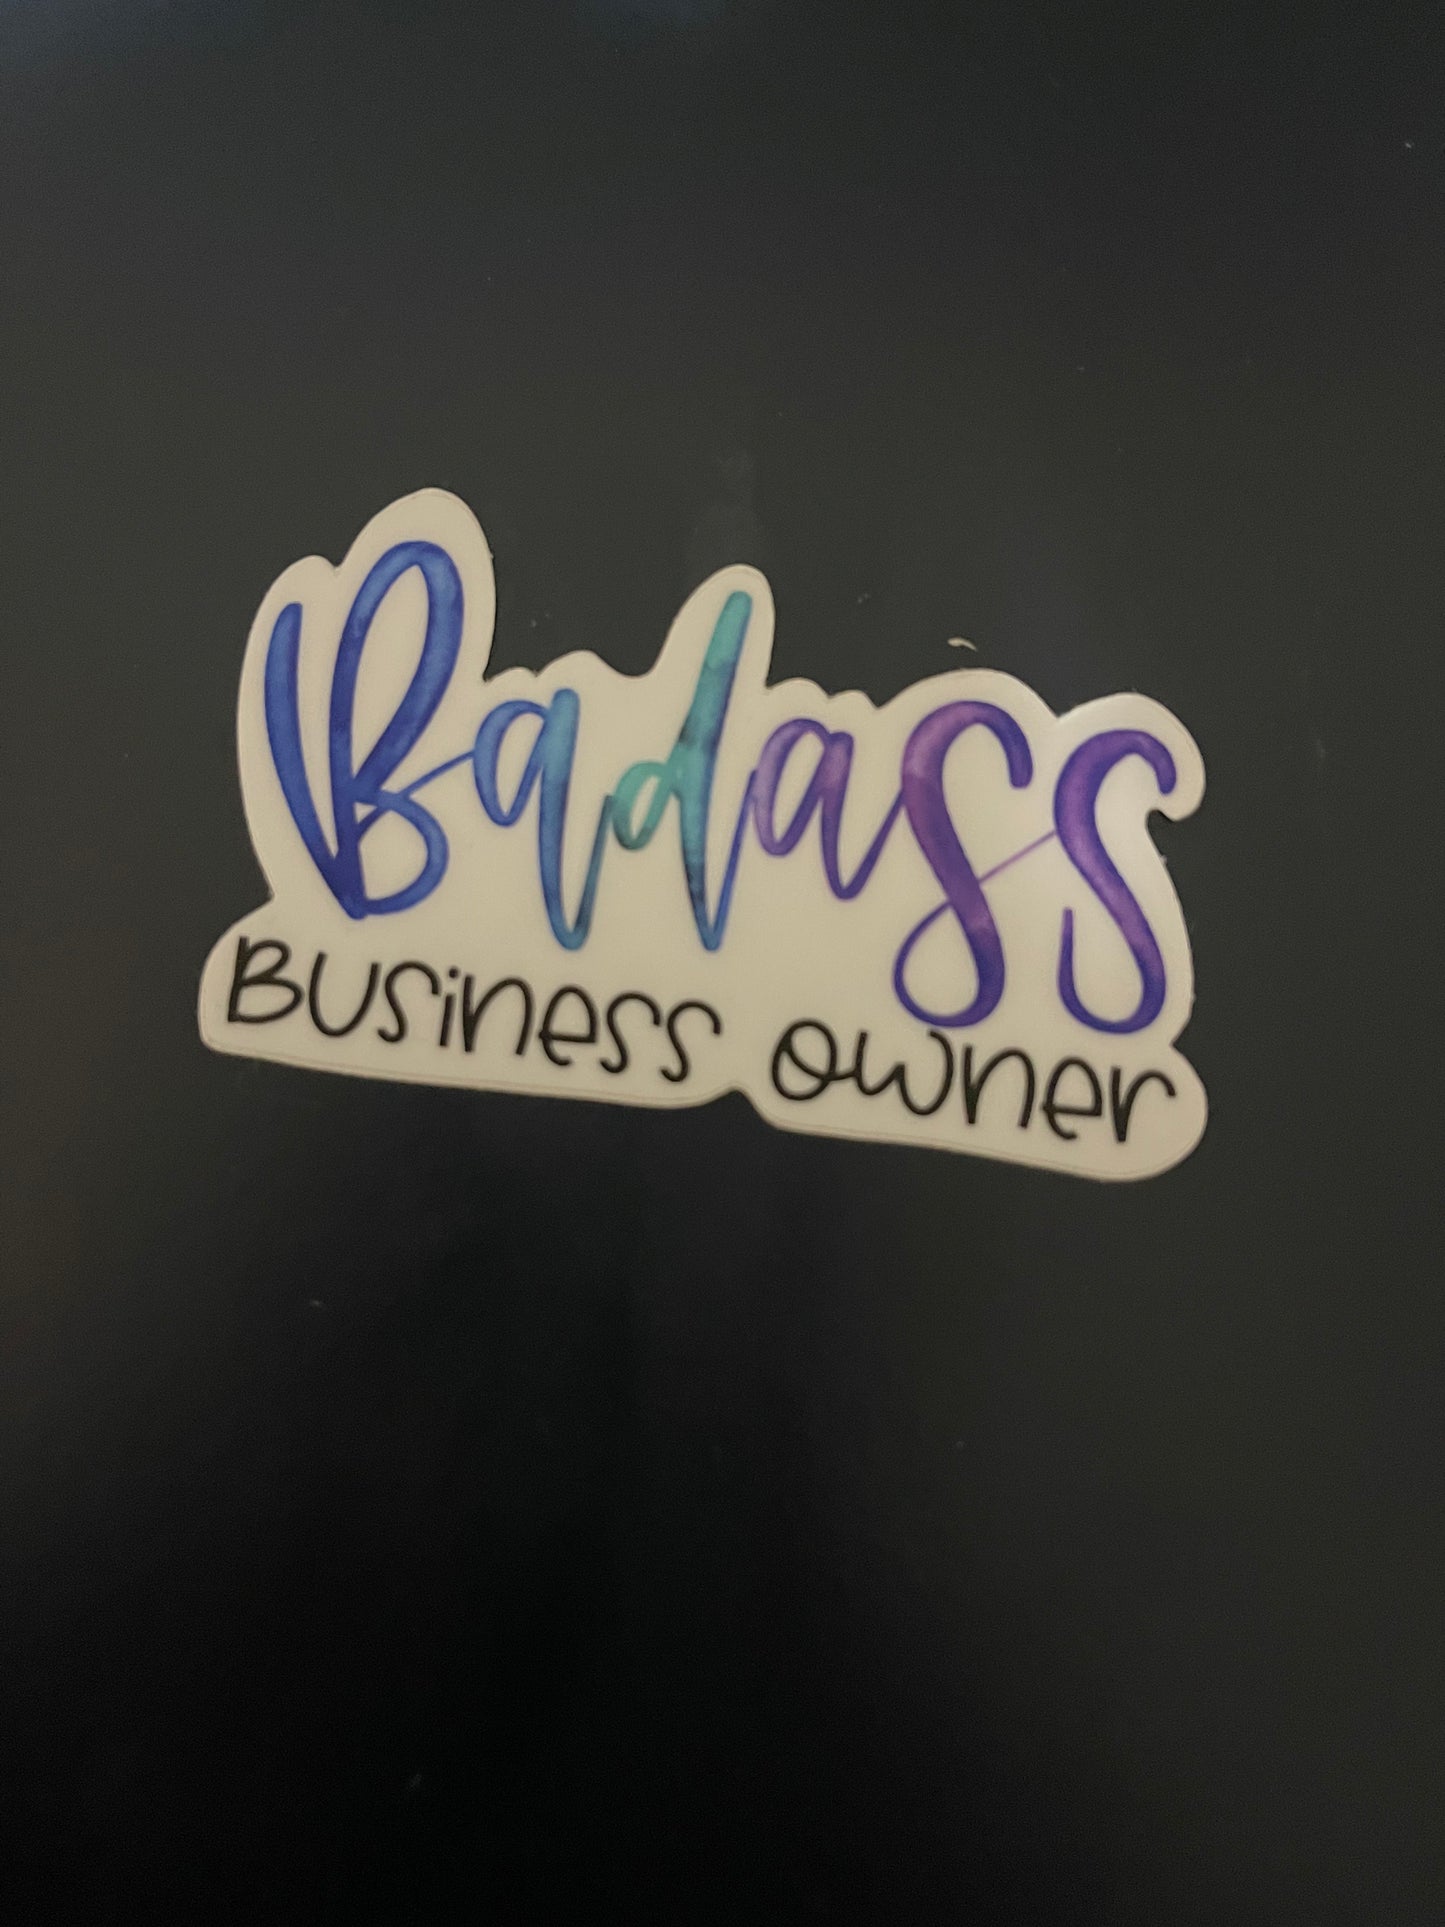 Badass Business Owner Sticker